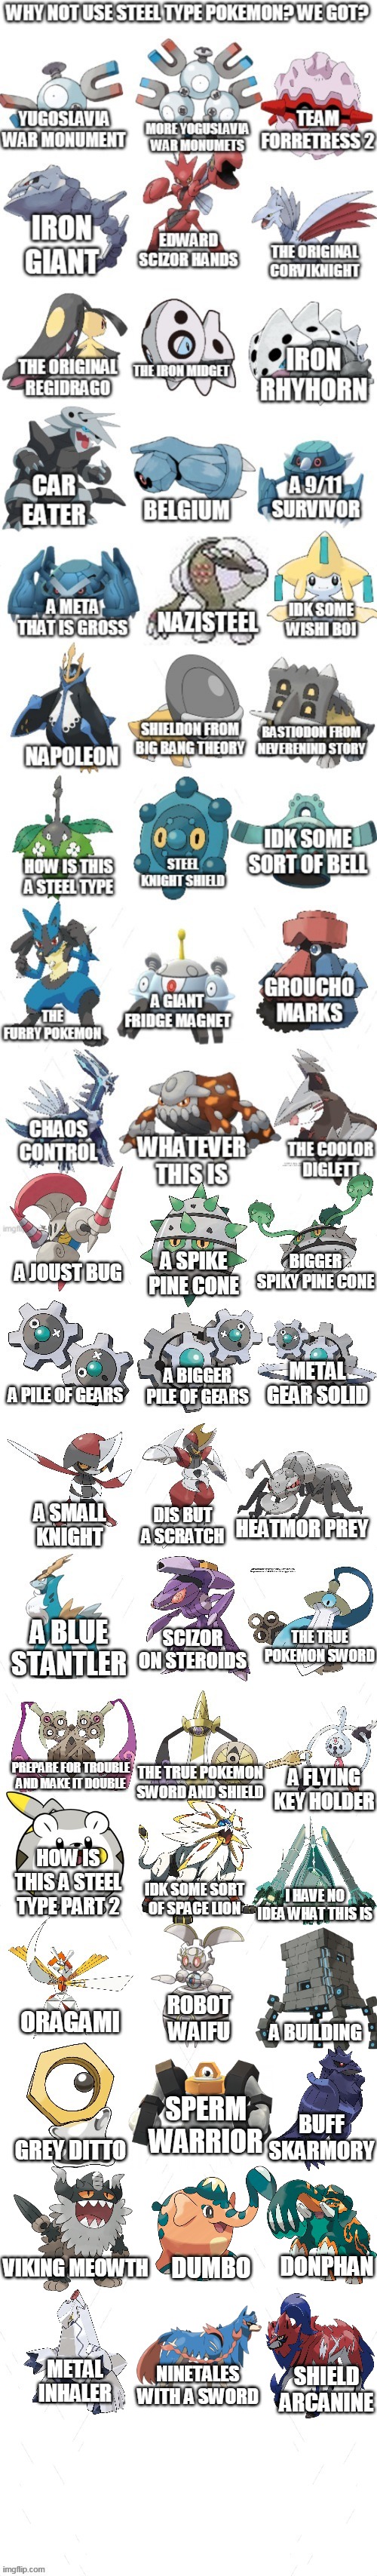 Steel type pokemon